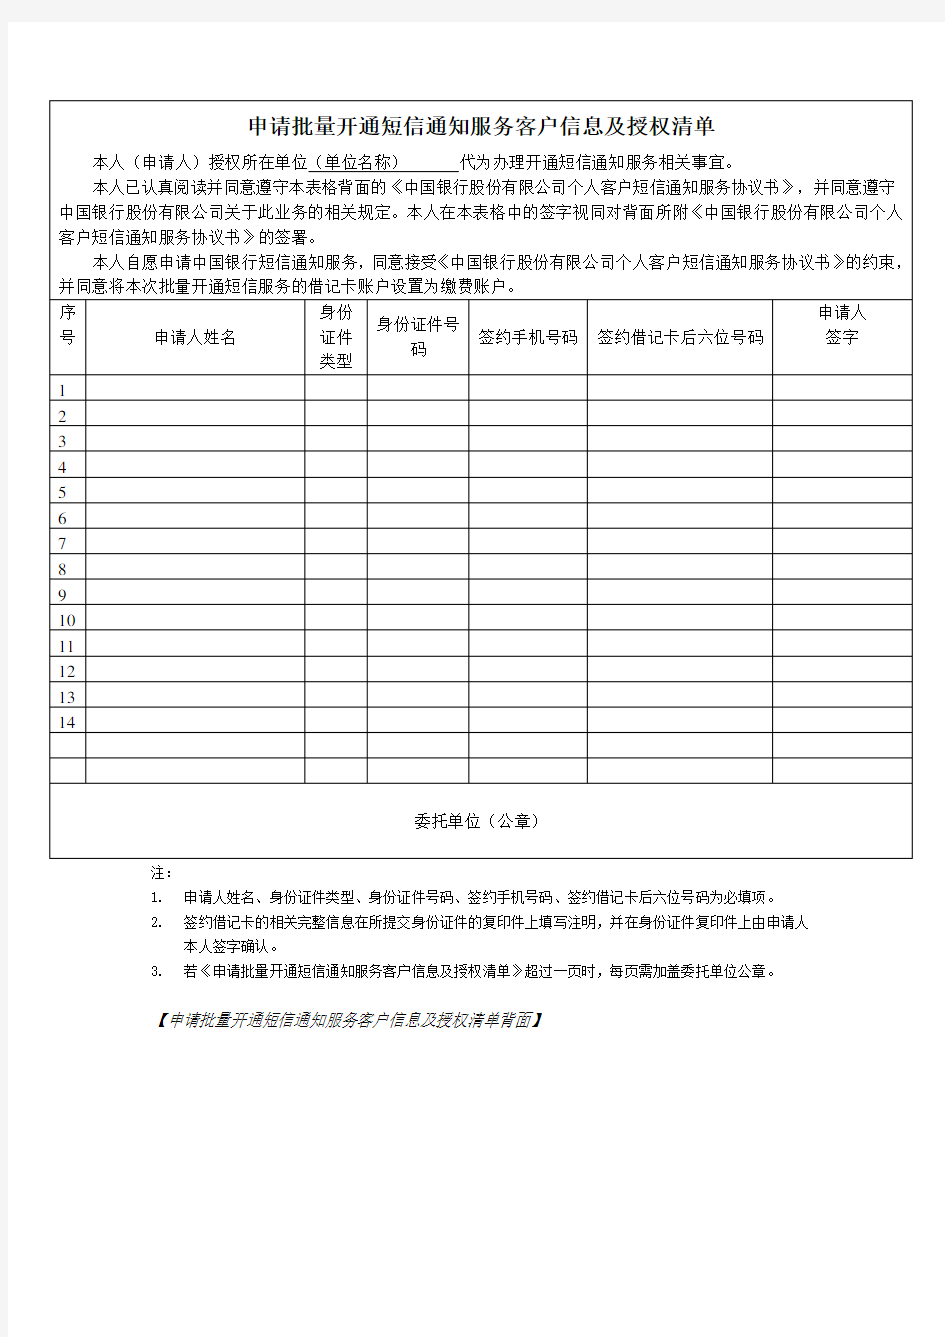 中国银行-申请批量开通短信通知服务单位授权书